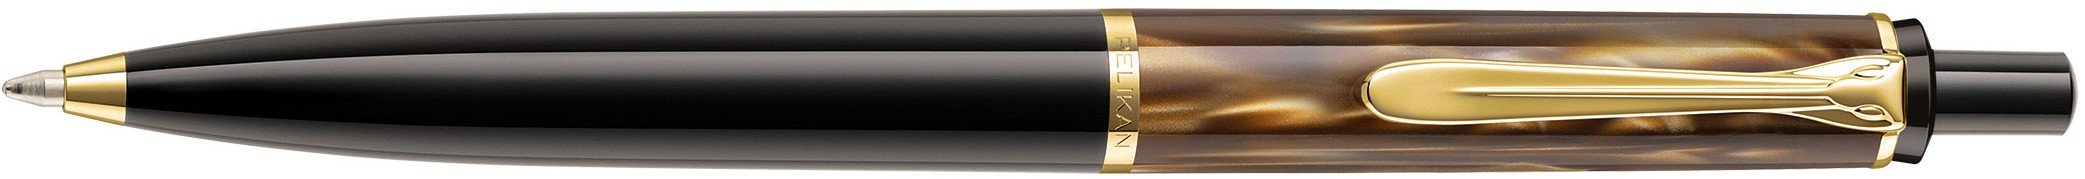 Ручка шариковая Pelikan Elegance Classic K200, коричневый мрамор, подарочная коробка